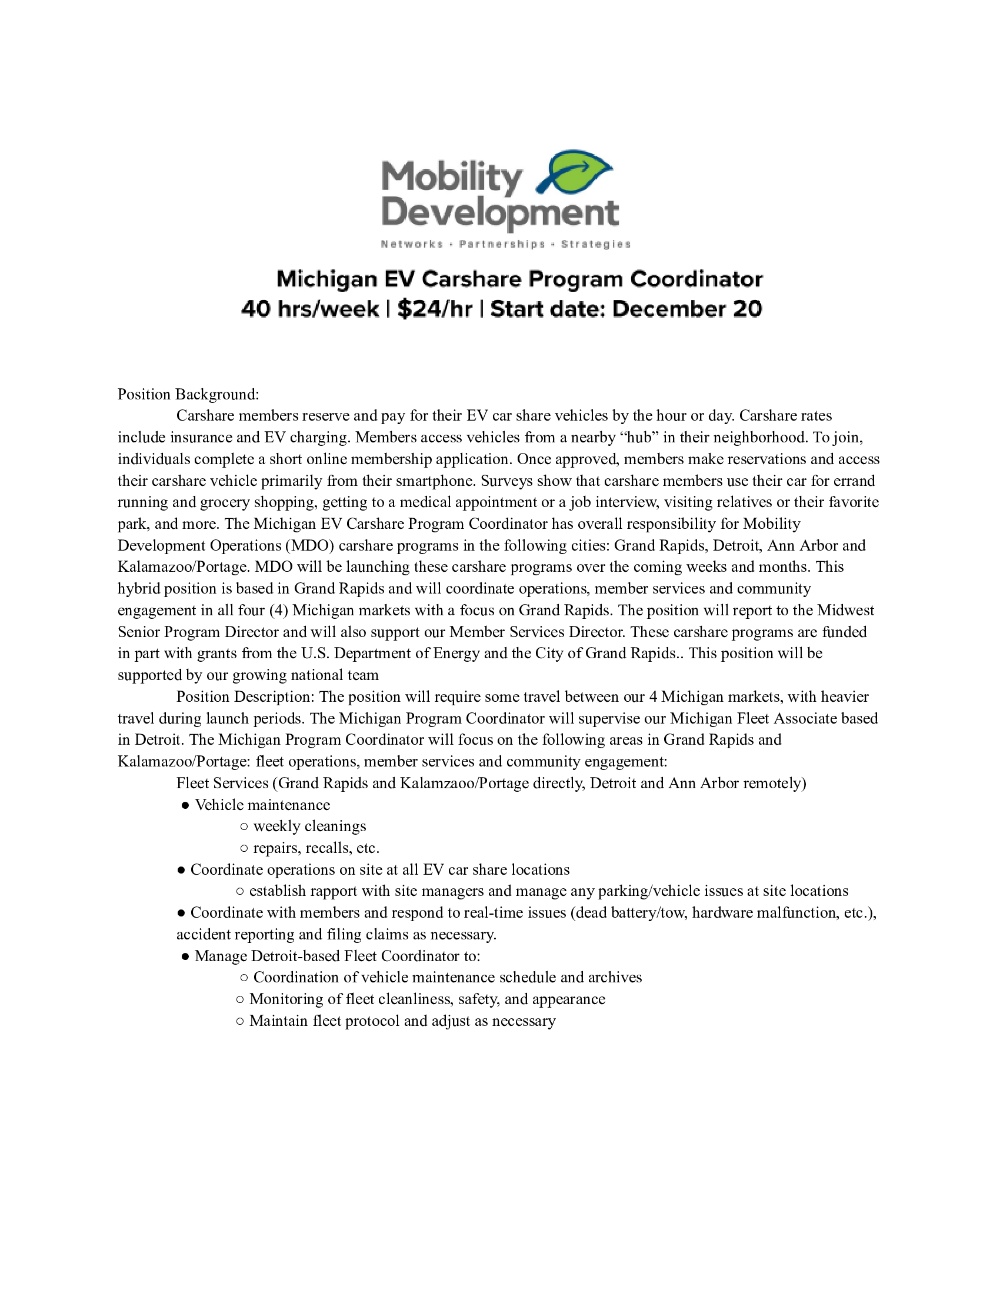 Michigan EV Carshare Program Coordinator 40 hrs/week | $24/hr | Start date: December 2023